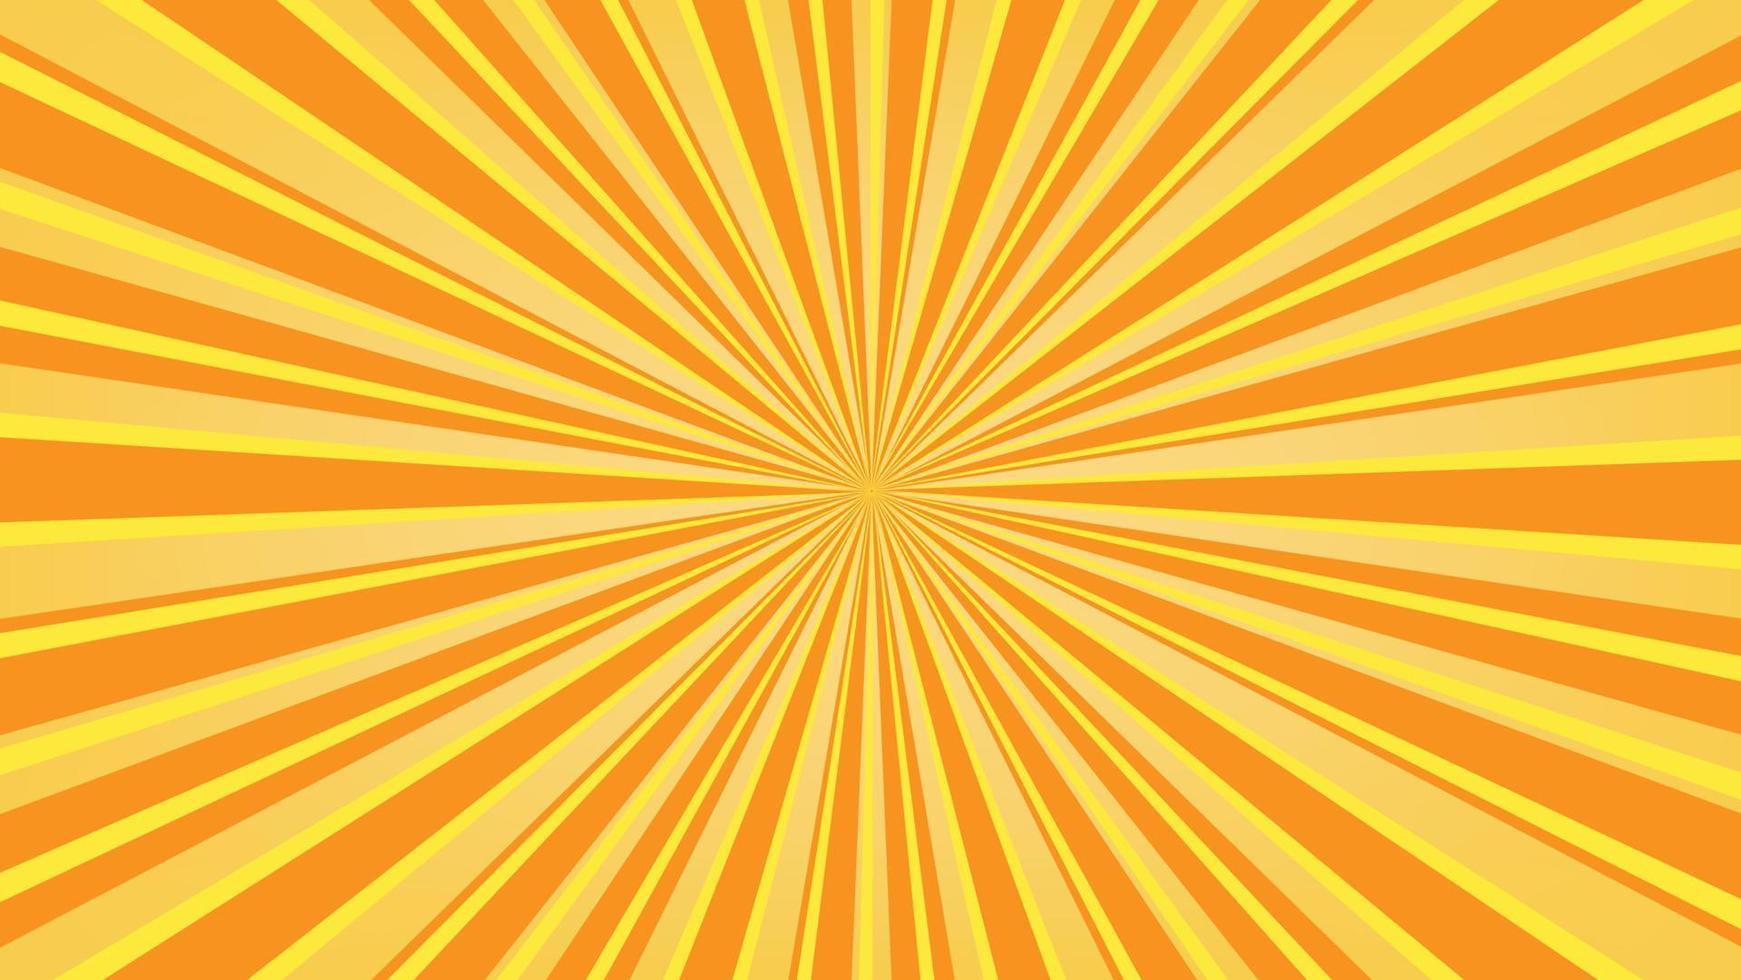 abstrakter gelber sonnendurchbruchmusterhintergrund für modernes grafikdesignelement. glänzender strahlkarikatur mit buntem für websitefahnentapete und plakatkartendekoration vektor